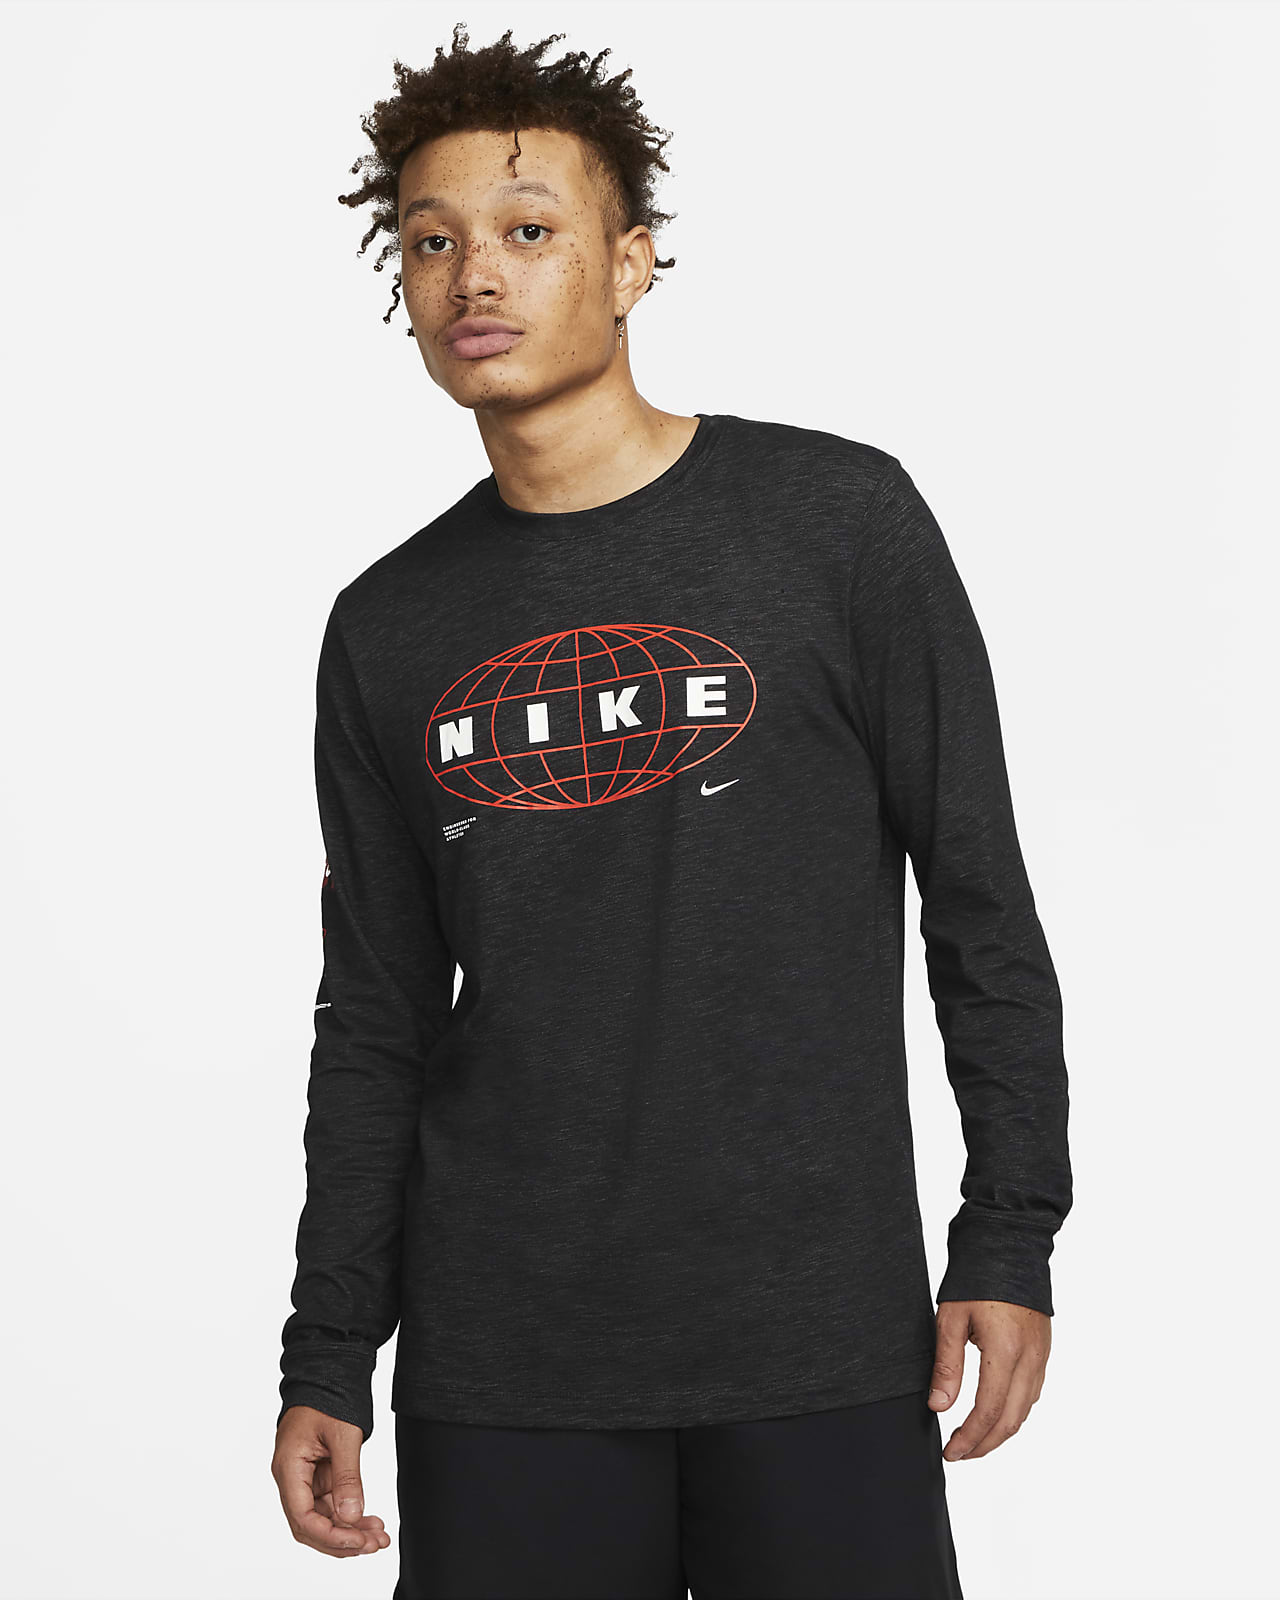 Resentimiento bloquear Descendencia Nike Dri-FIT Camiseta de entrenamiento de manga larga - Hombre. Nike ES